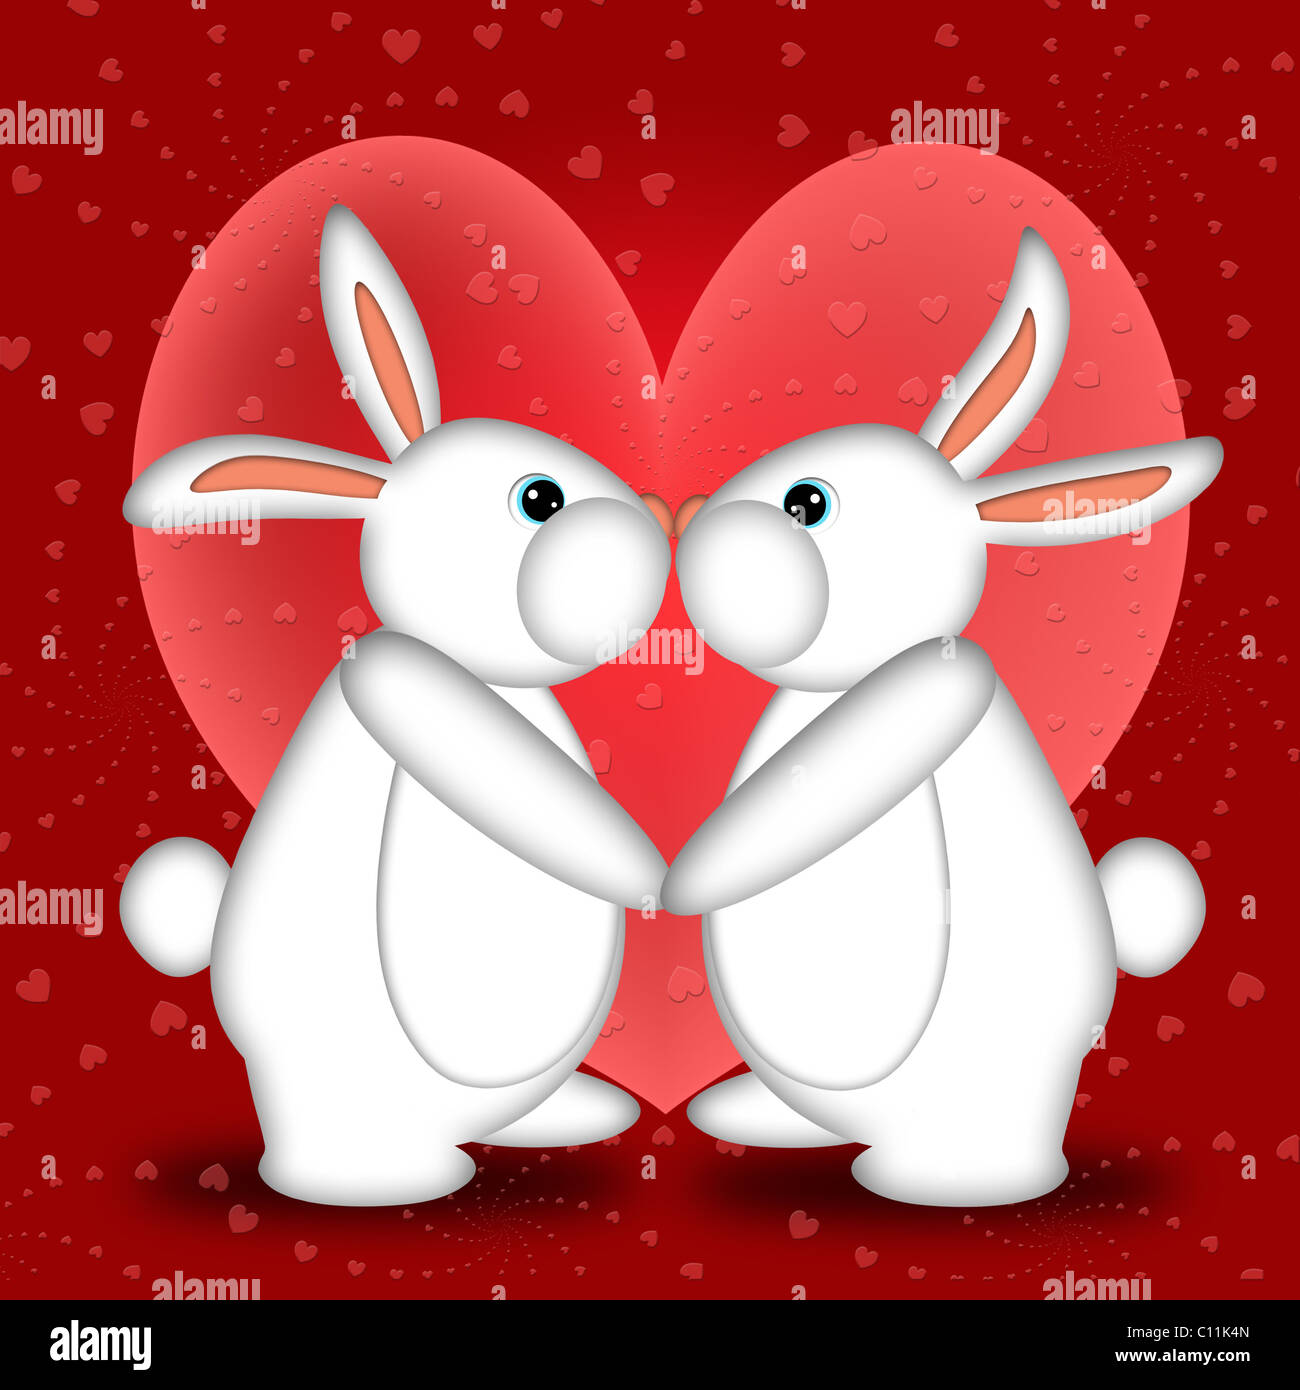 Valentinstag oder Silvester weißer Hase Kaninchen küssen mit Herzen  Illustration Stockfotografie - Alamy